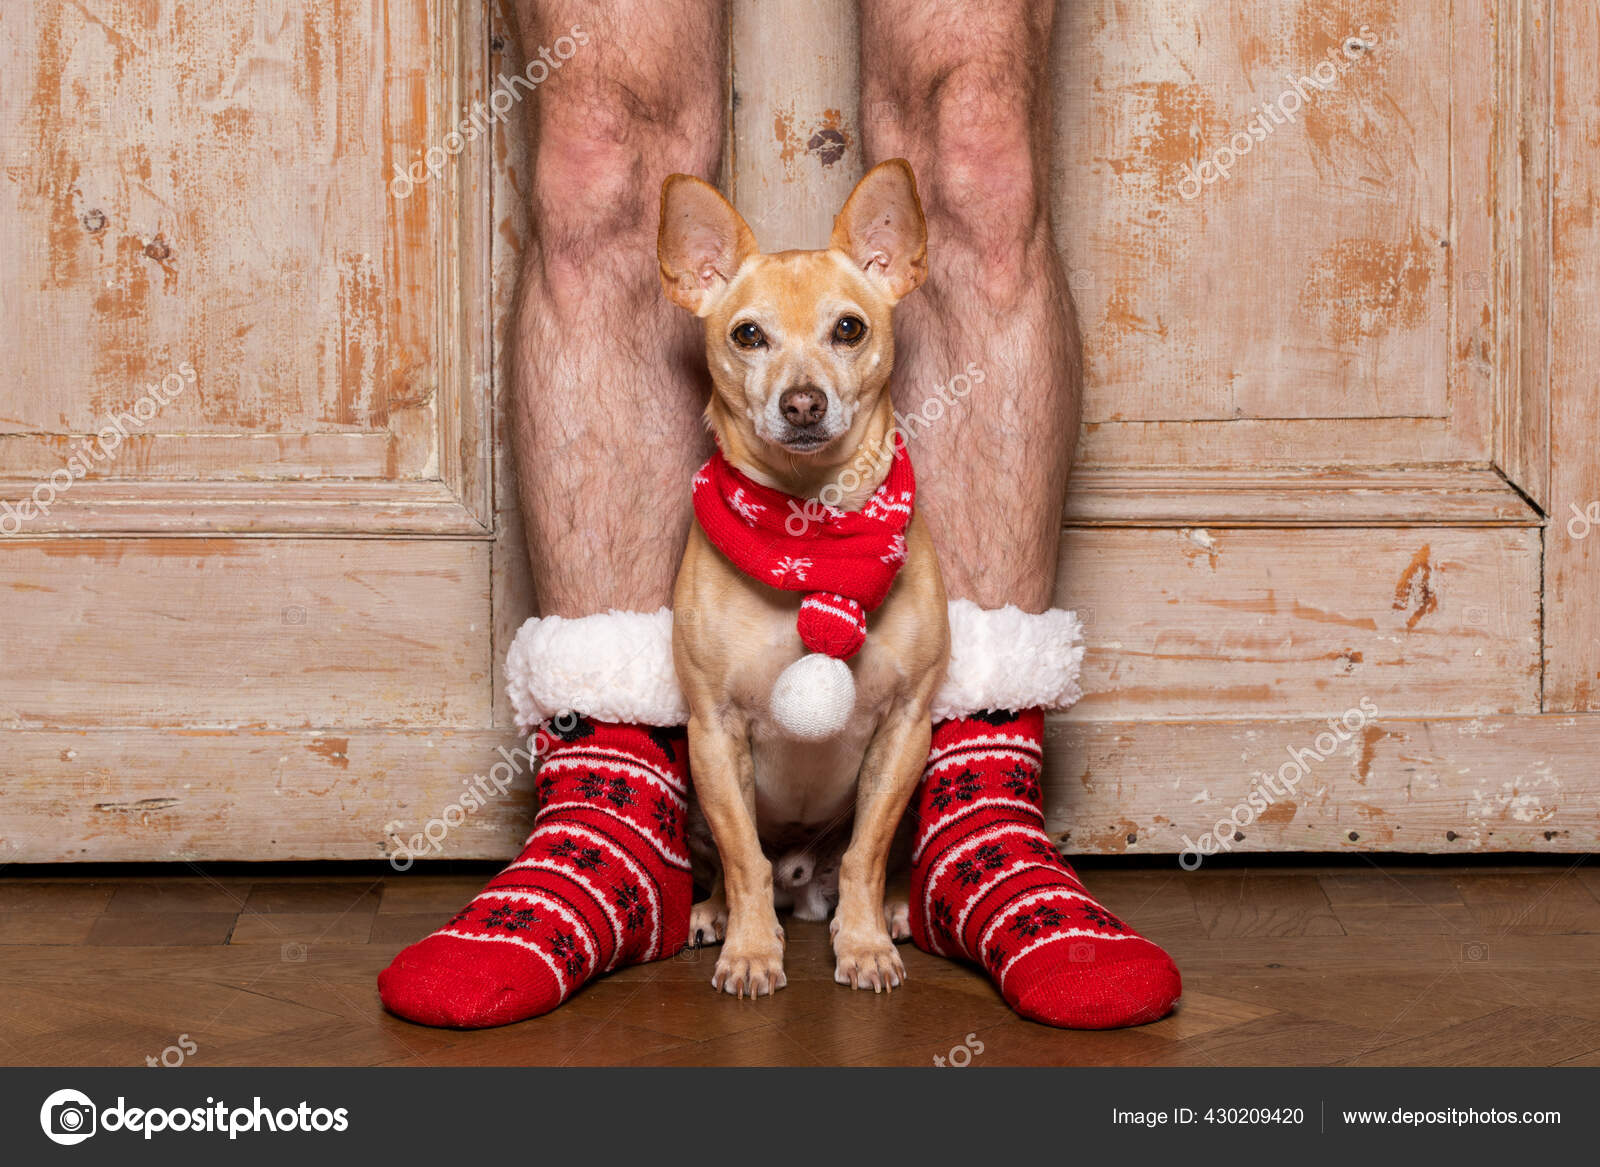 https://st2.depositphotos.com/1146092/43020/i/1600/depositphotos_430209420-stock-photo-christmas-santa-claus-chihuahua-dog.jpg